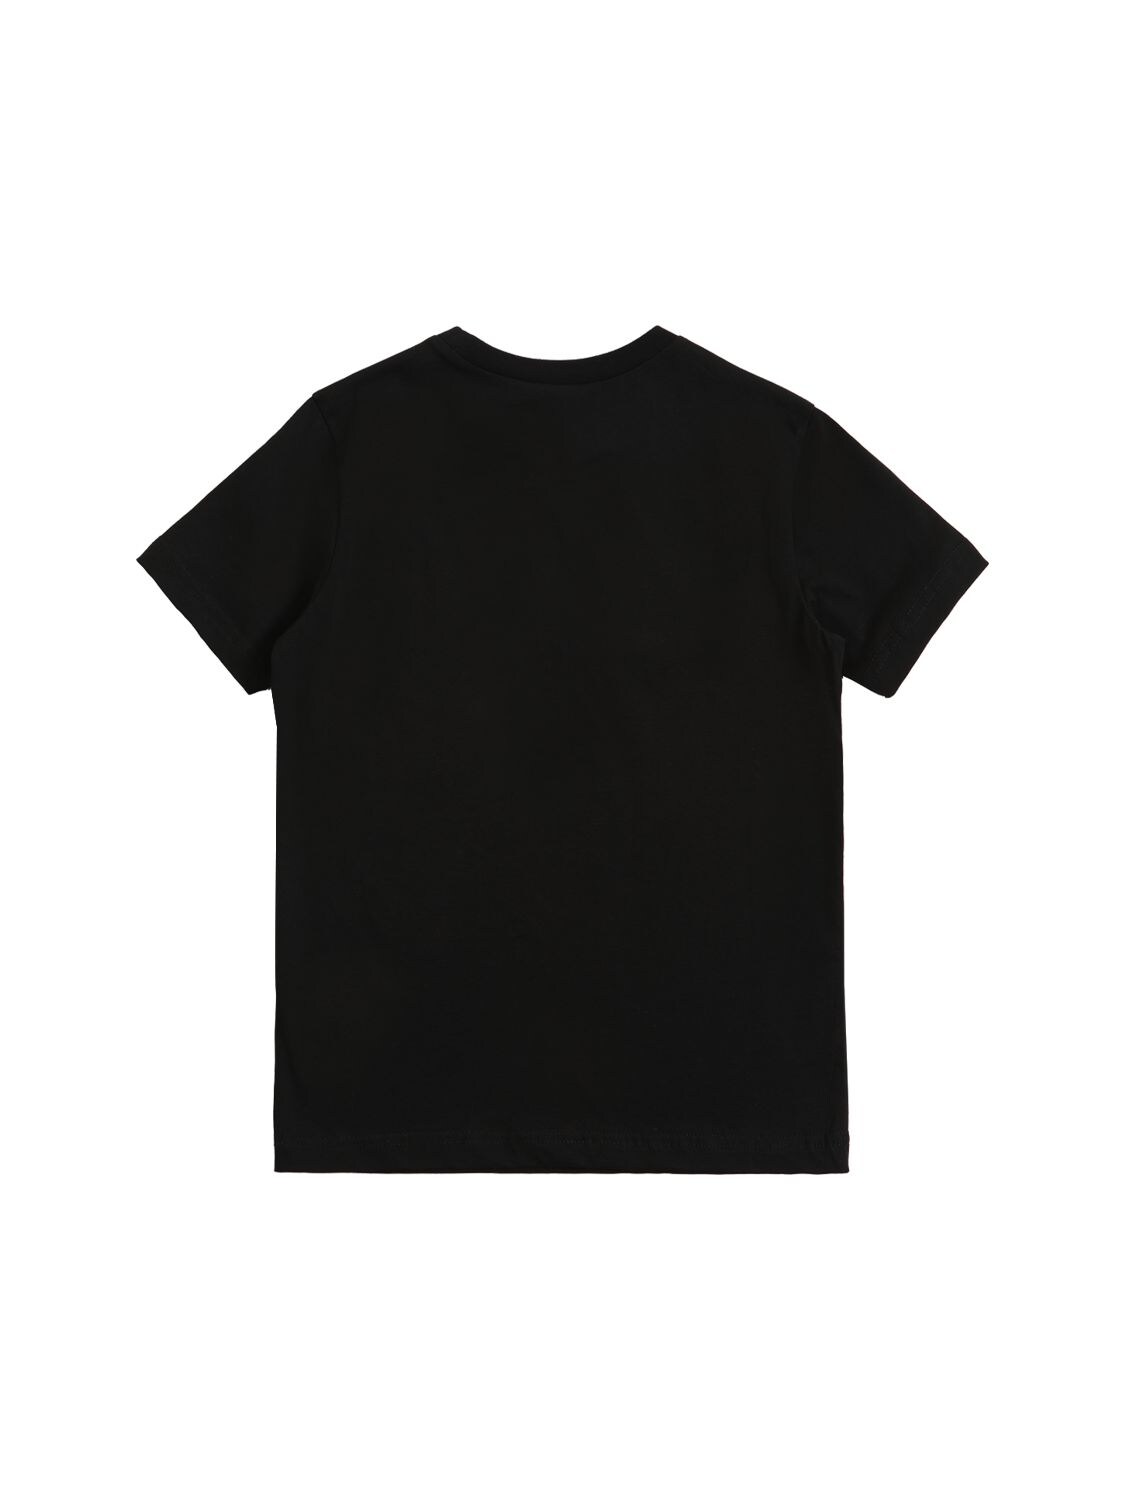 Shop N°21 Rubberized Logo Cotton Jersey T-shirt In Black